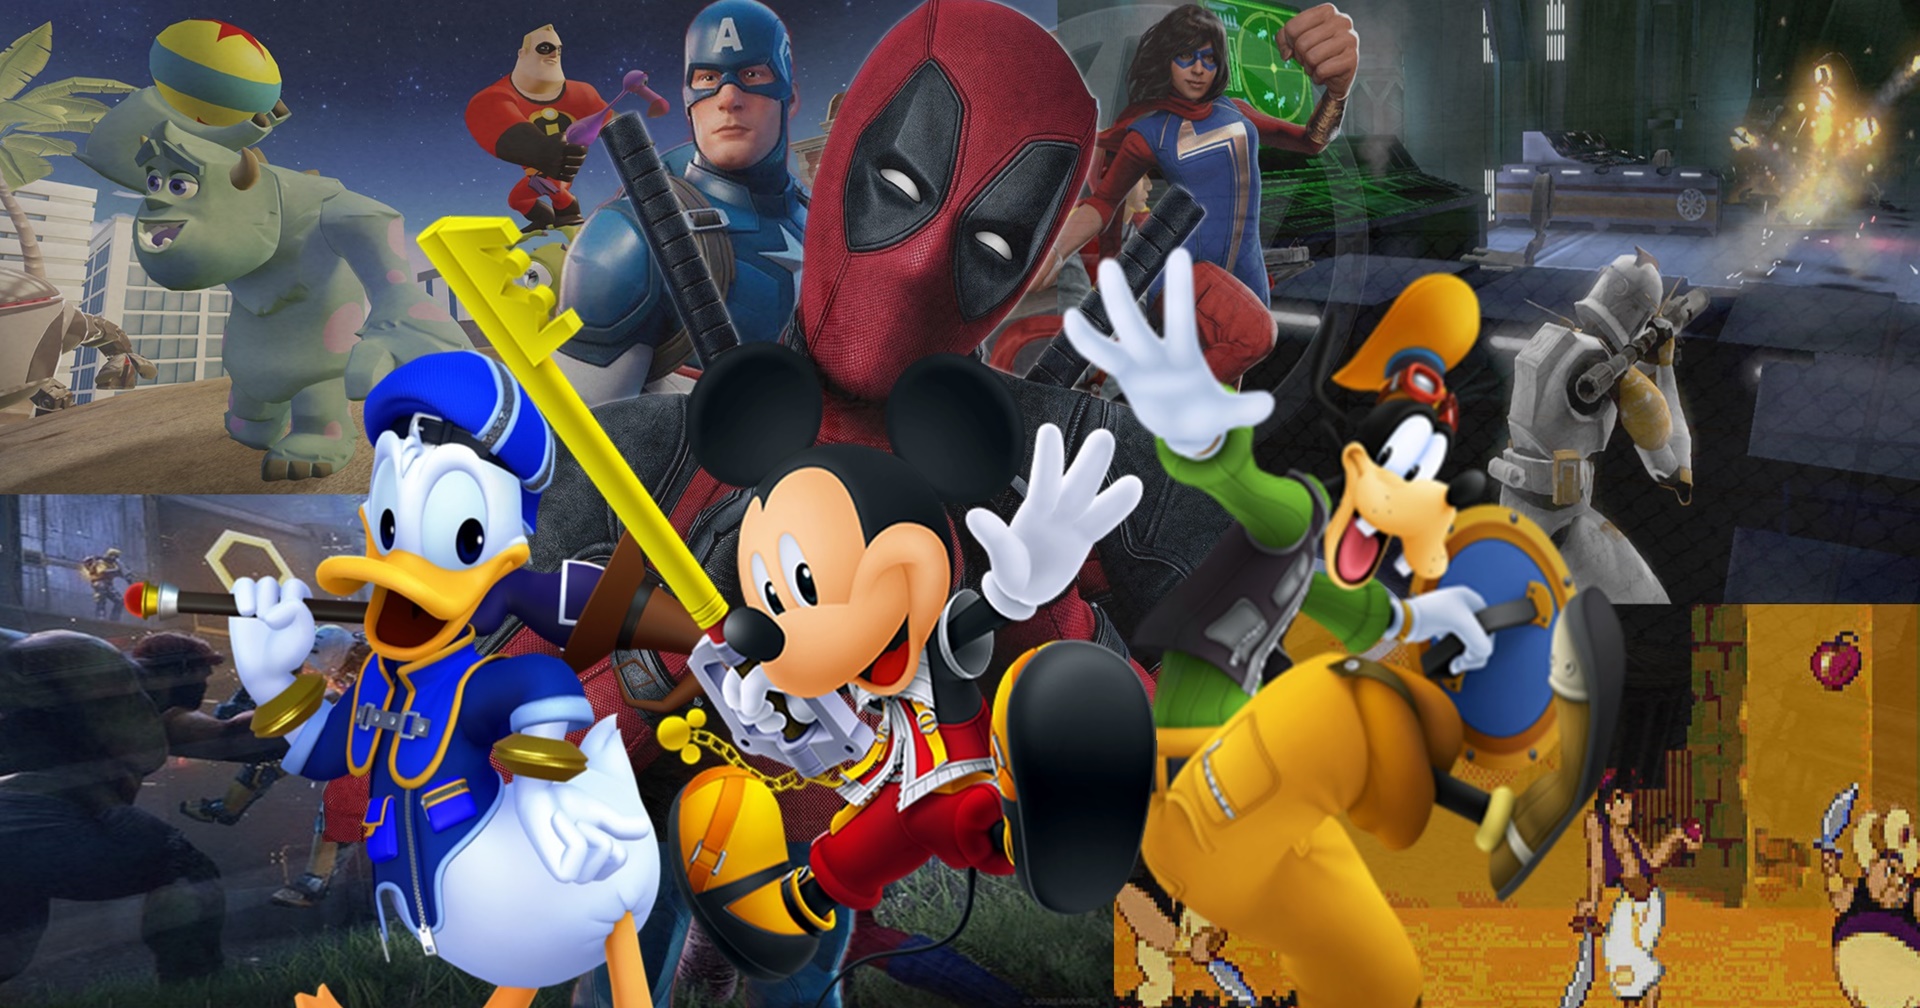 รวมภาพยนตร์การ์ตูนใน Disney Plus ที่ถูกสร้างเป็นวิดีโอเกมที่คุณควรหามาเล่น